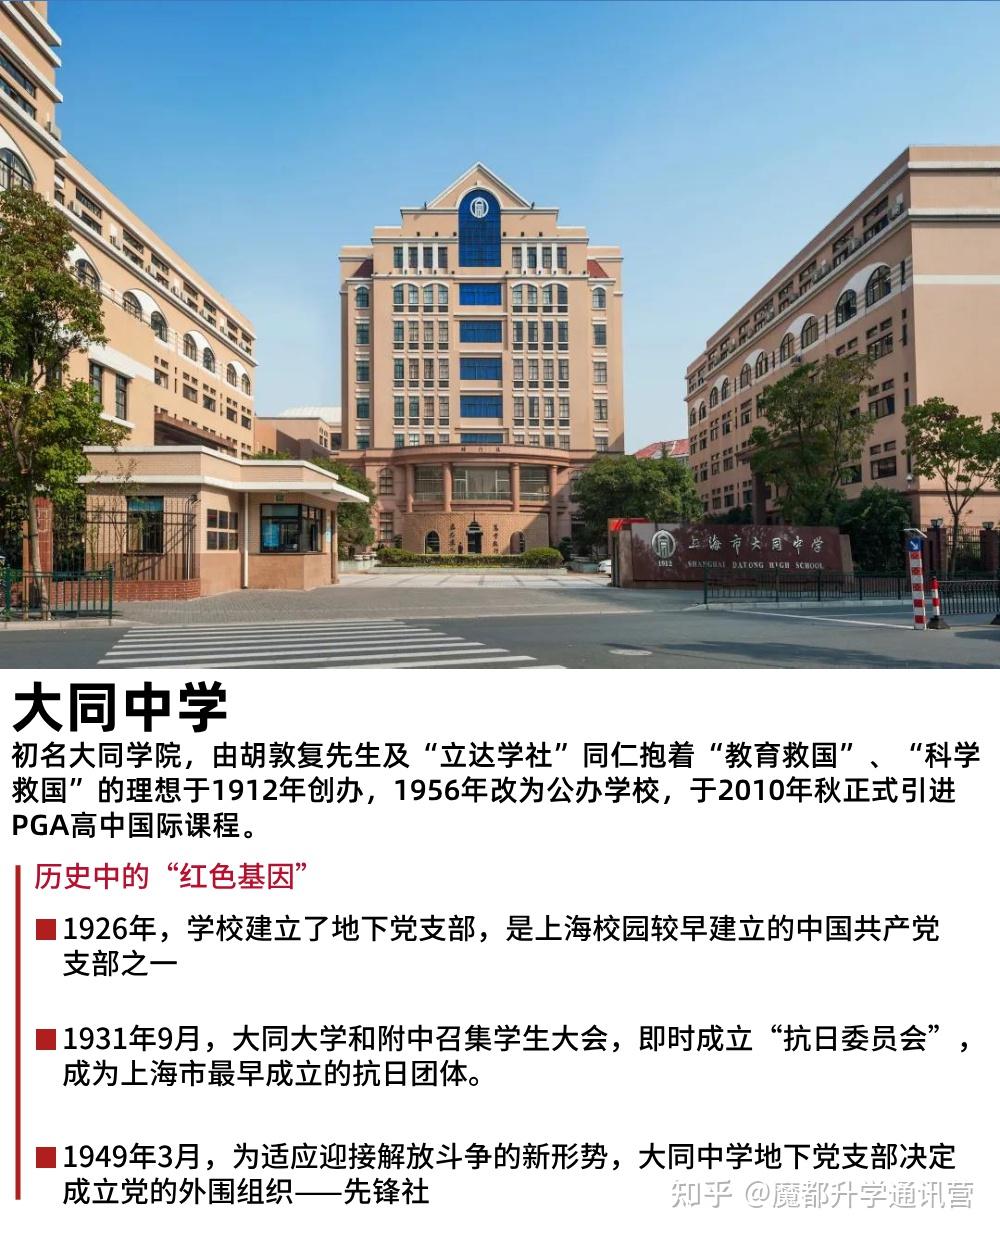 上海市大同中学先行先试,于2010年秋正式引进pga高中国际课程